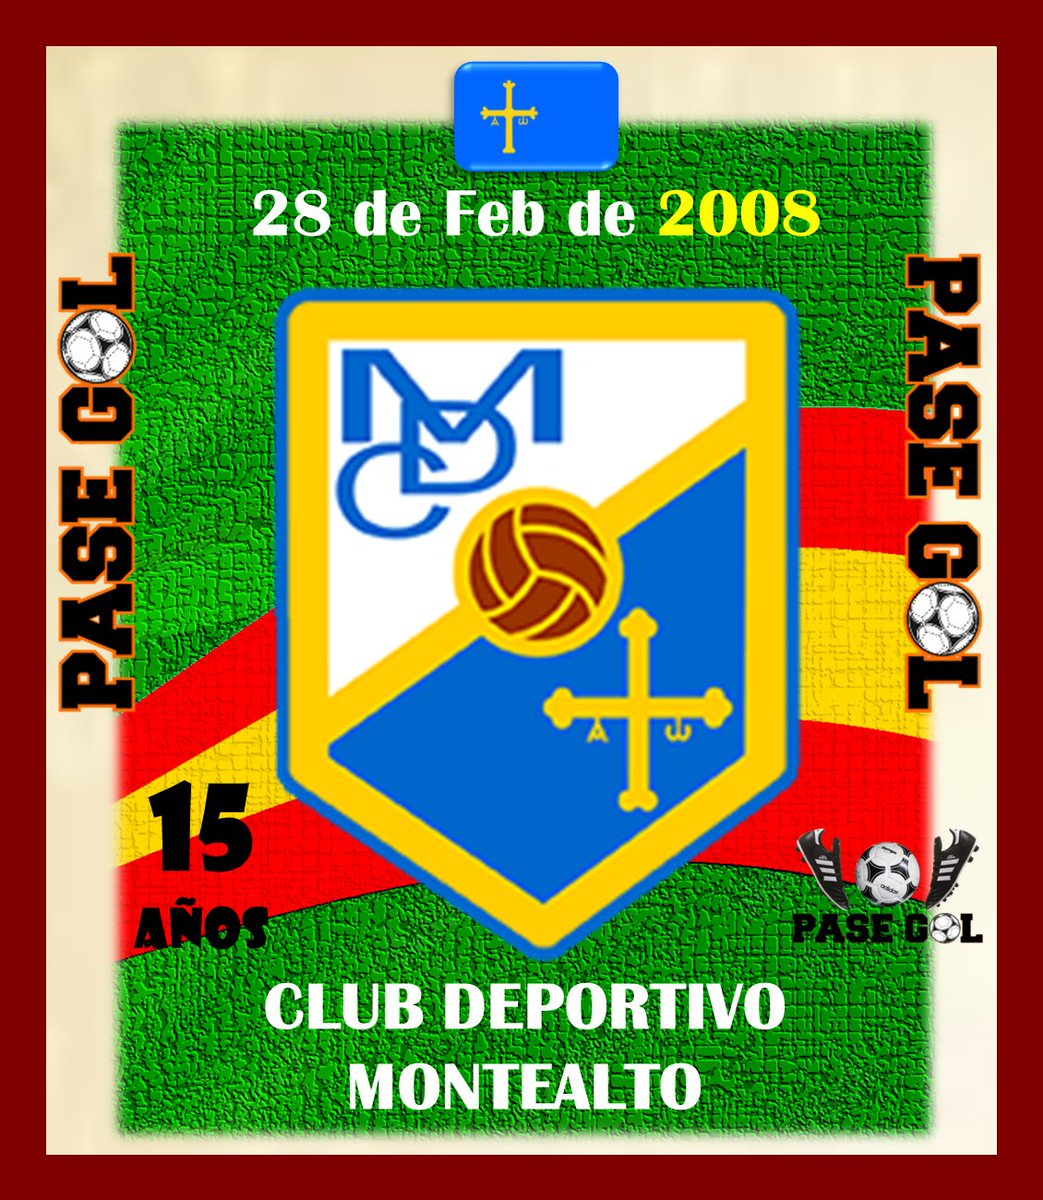 🥅 Felicitaciones
a los clubes españoles 🇪🇸 fundados en el mes de Febrero. ⚽ Por muchos años más!!! 🏆 Día 28
@cdmontealto